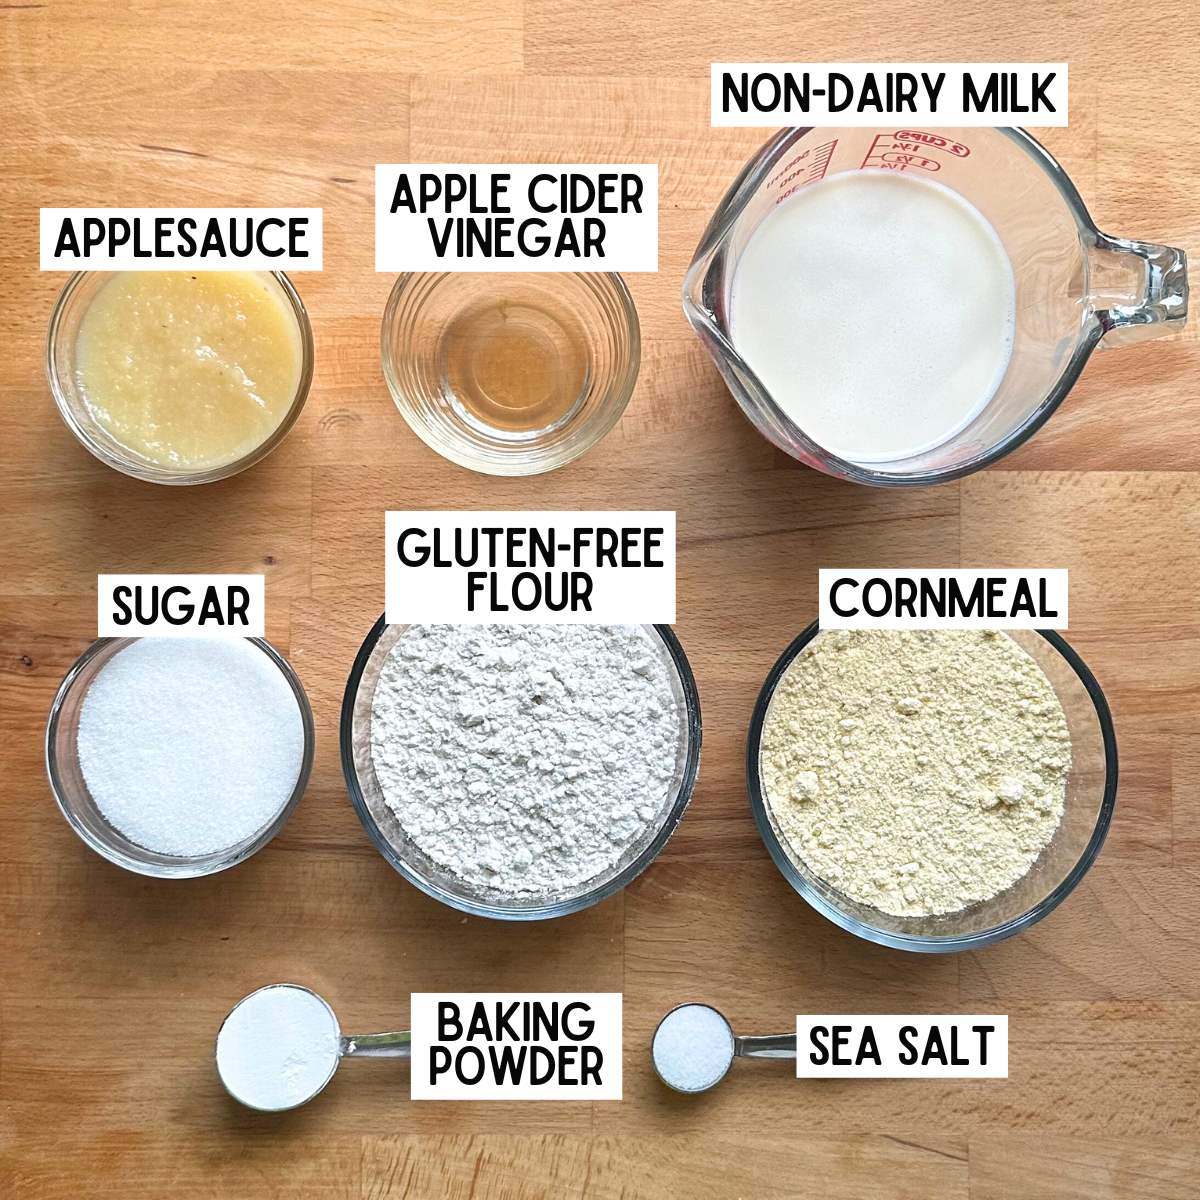 Ingredients to make vegan gluten-free cornbread with corresponding labels: apple sauce, apple cider vinegar, non-dairy milk, sugar, gluten-free flour, cornmeal, baking powder, and sea salt.